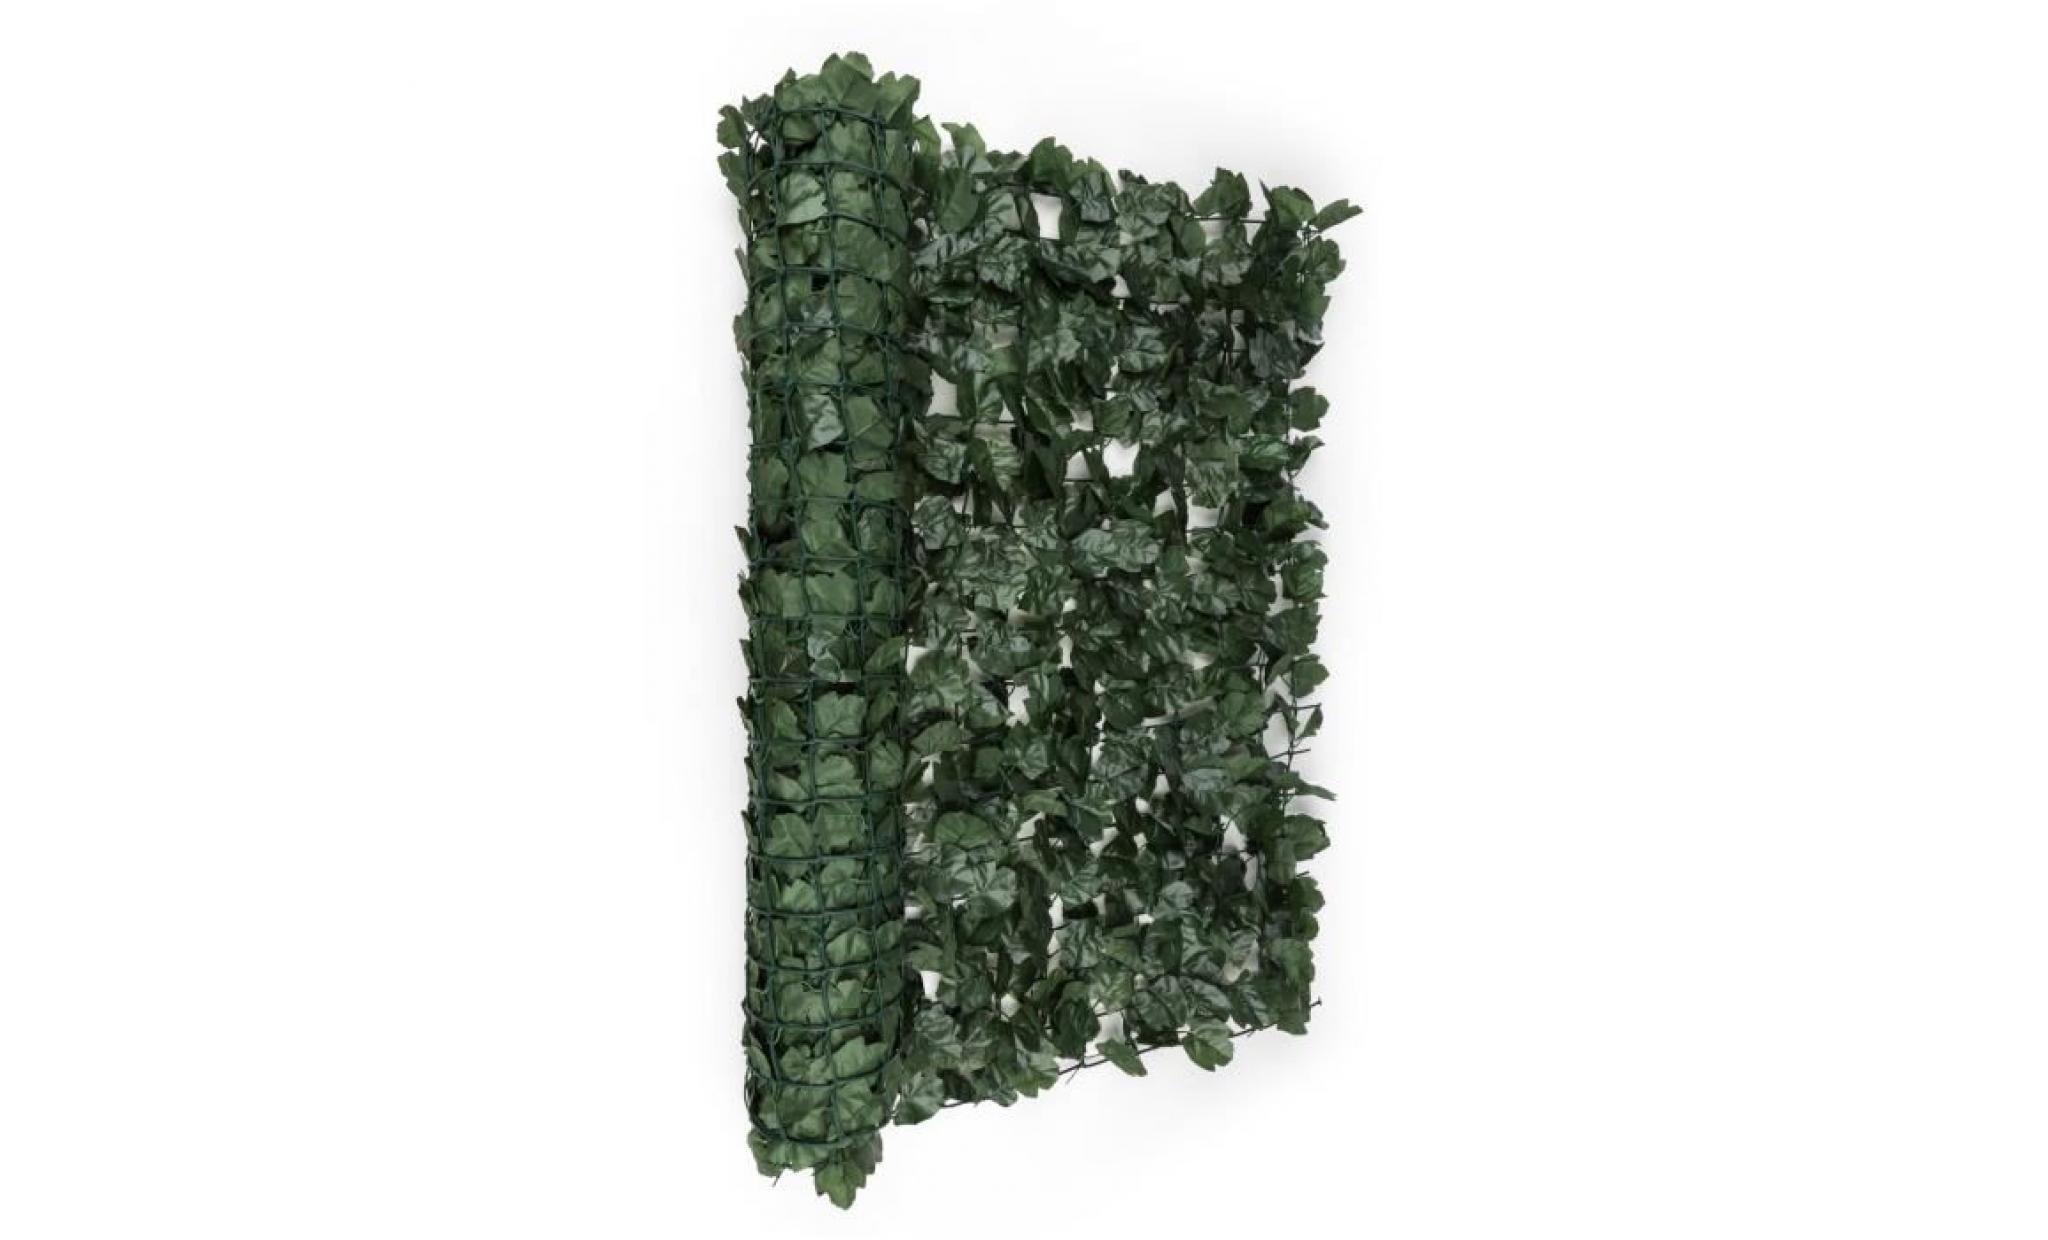 Blumfeldt Fency Dark Ivy Clôture pare-vue Paravent 300x150 cm lierre -vert foncé